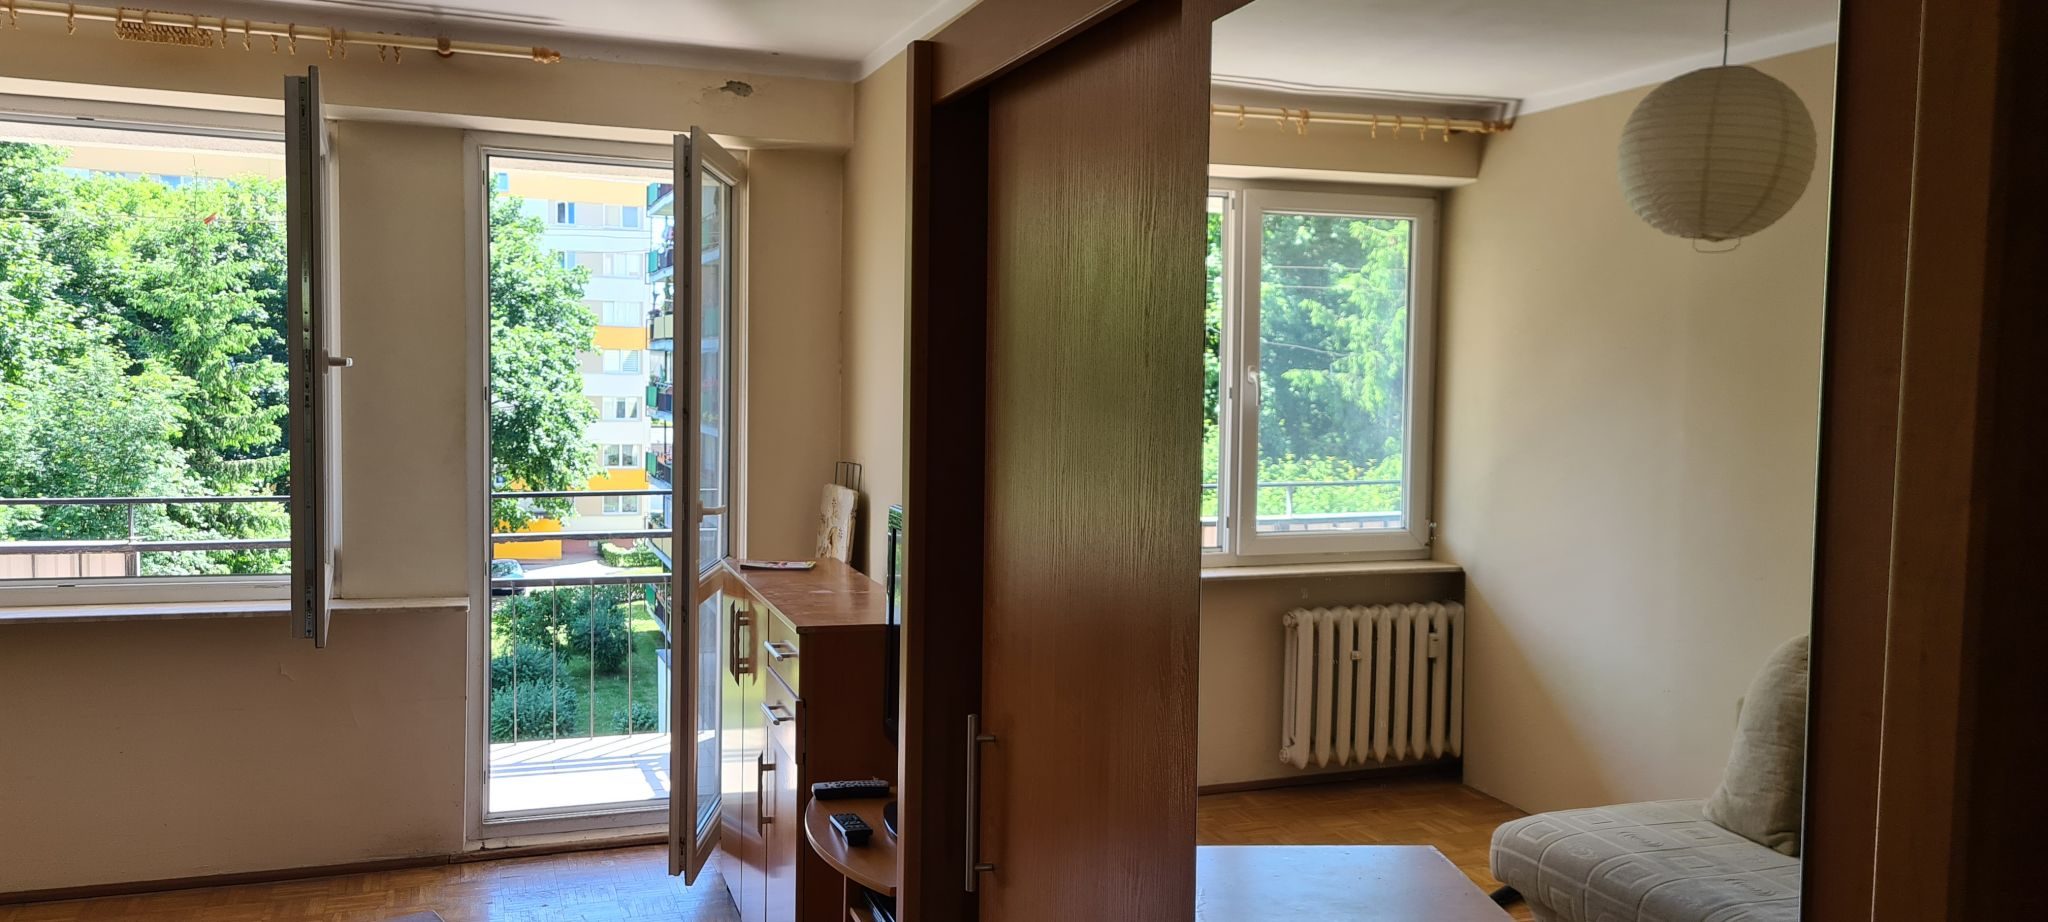 Купить квартиру в люблине польша цены германия какая страна